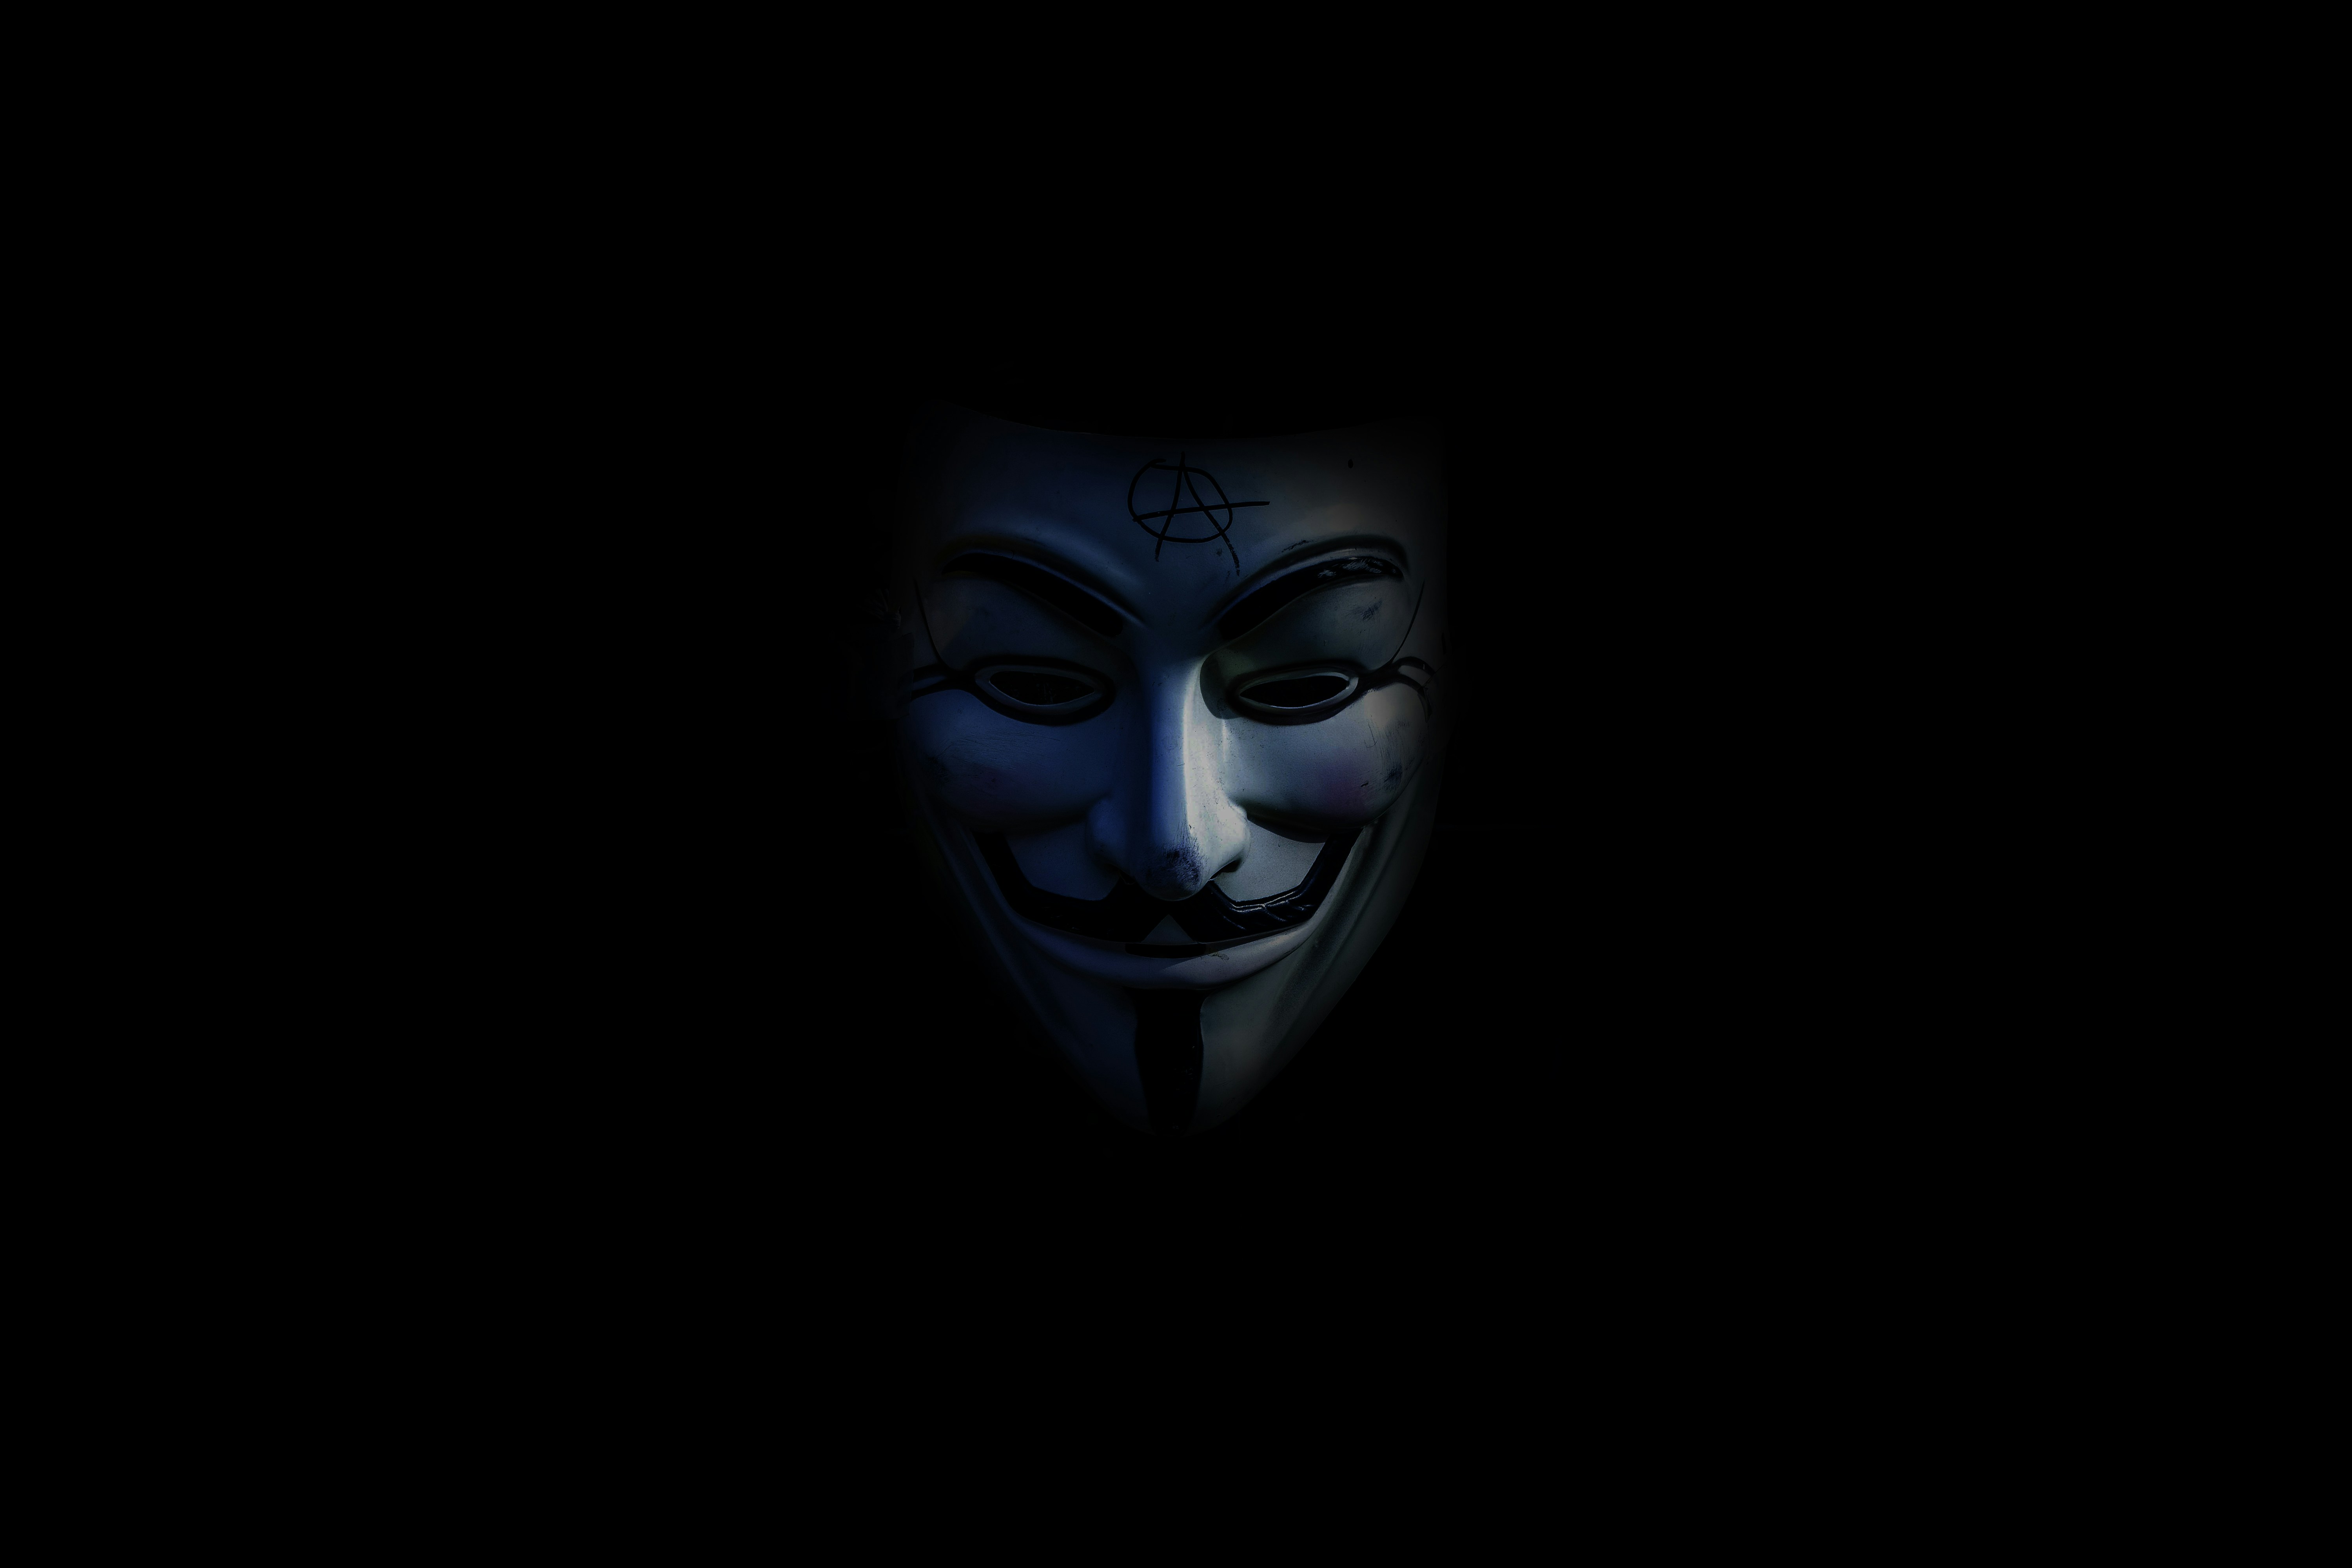 Vendetta Mask Pictures Download Free Images On Unsplash